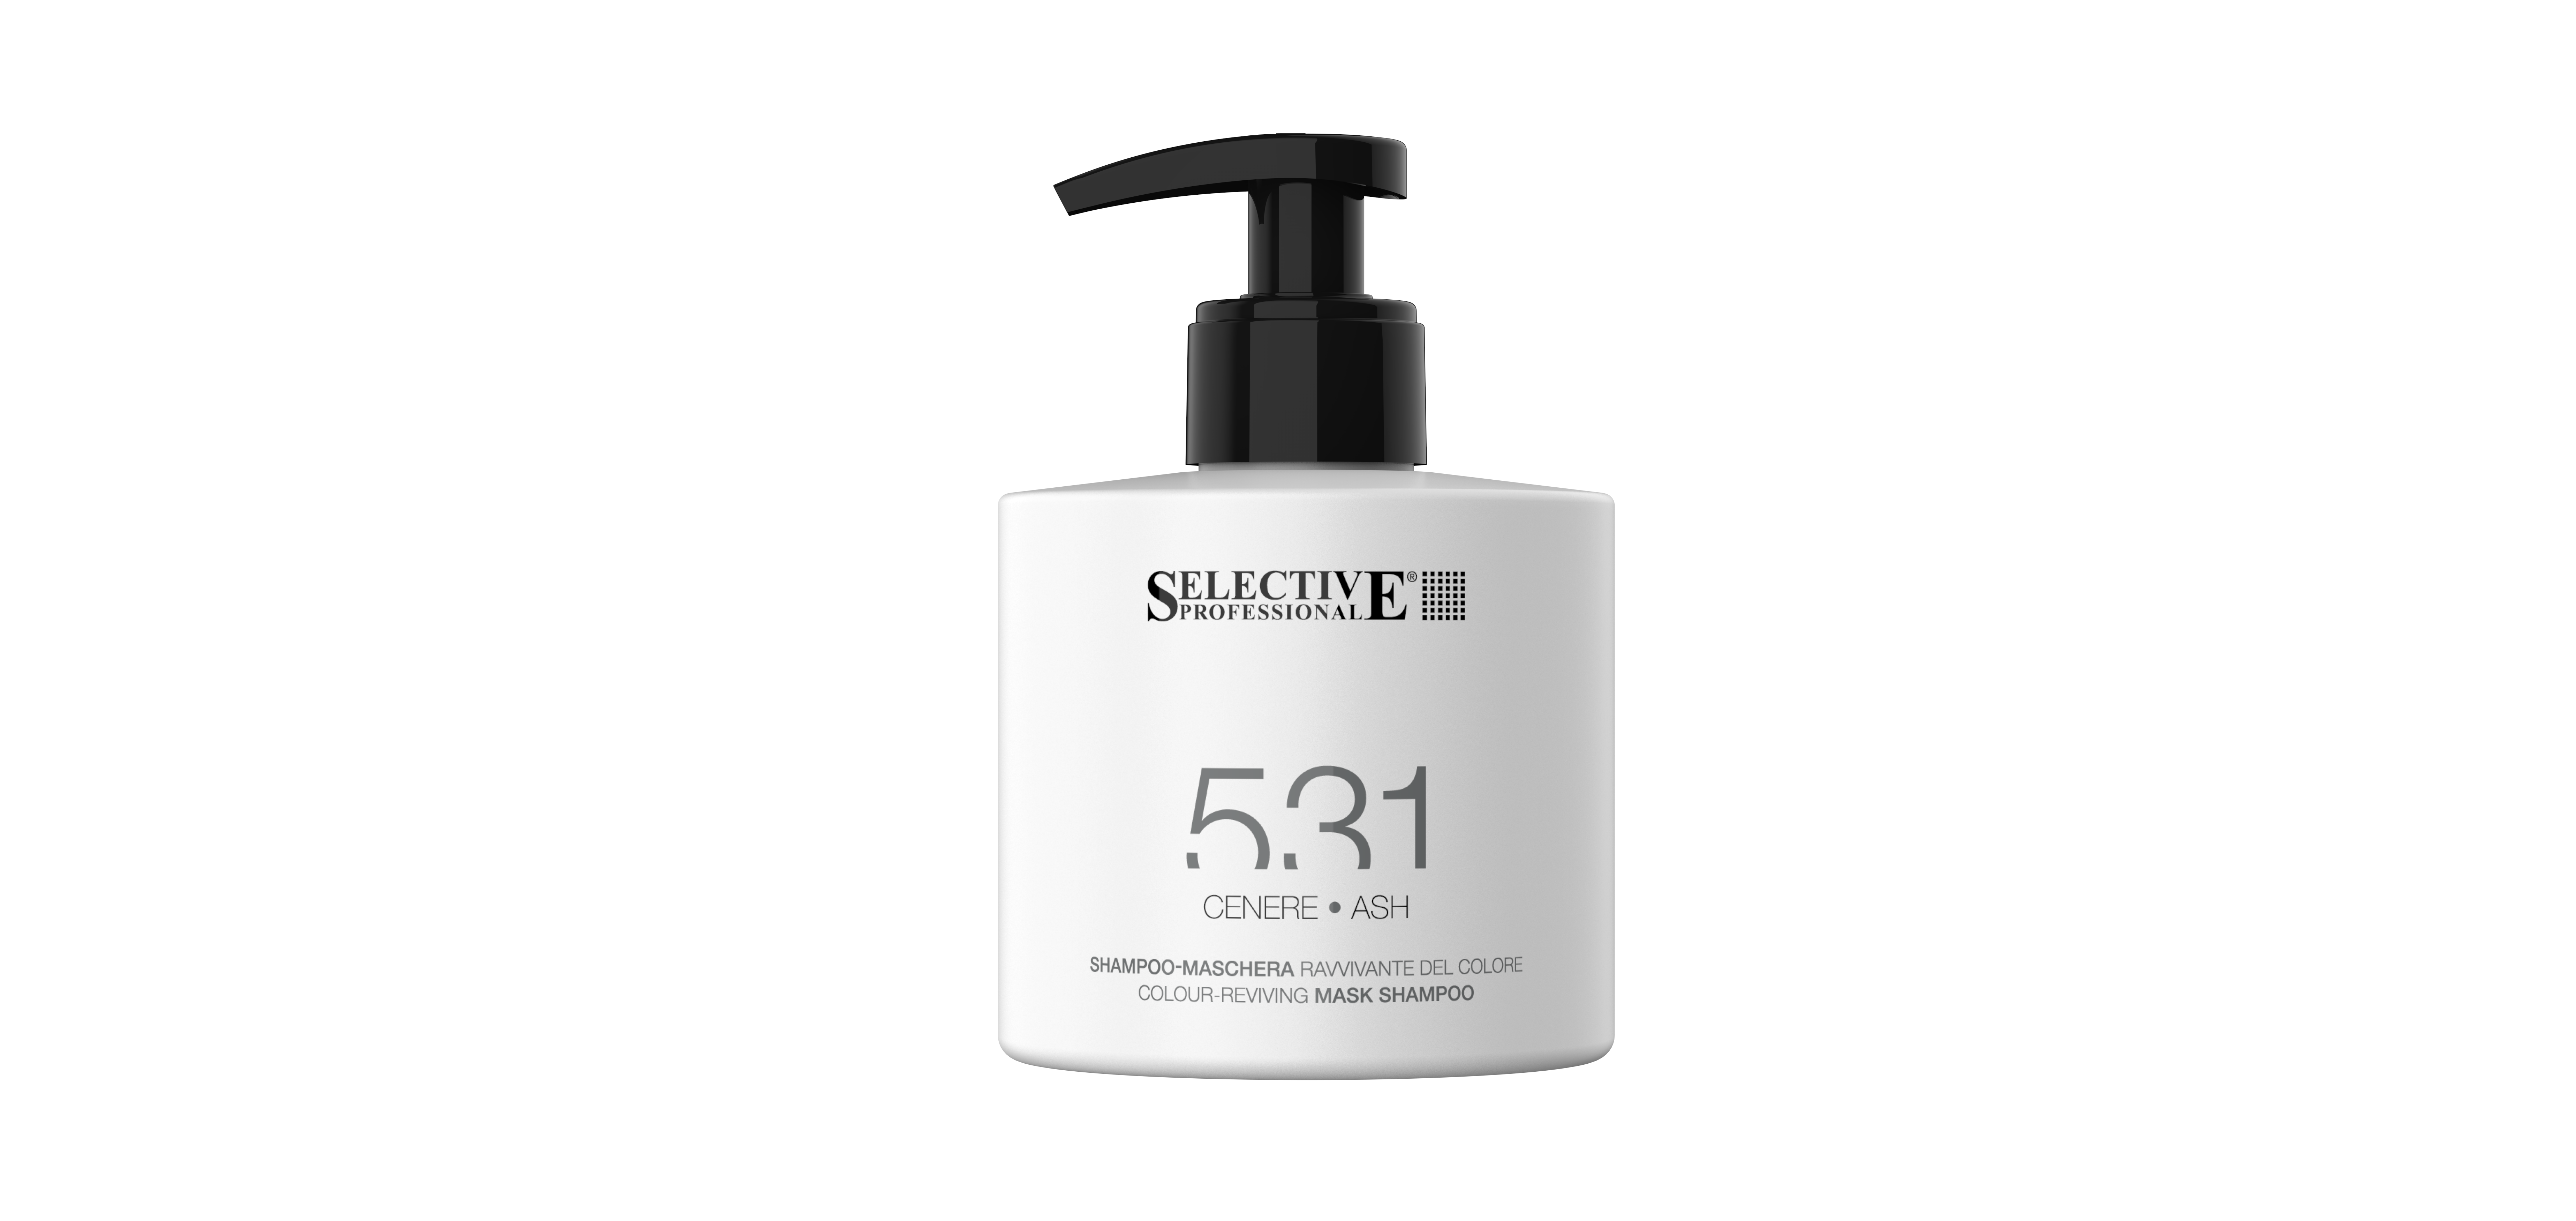 Шампуни для волос:  SELECTIVE PROFESSIONAL -  Оттеночный шампунь - маска 531 для возобновления цвета волос, Пепельный (275 мл)